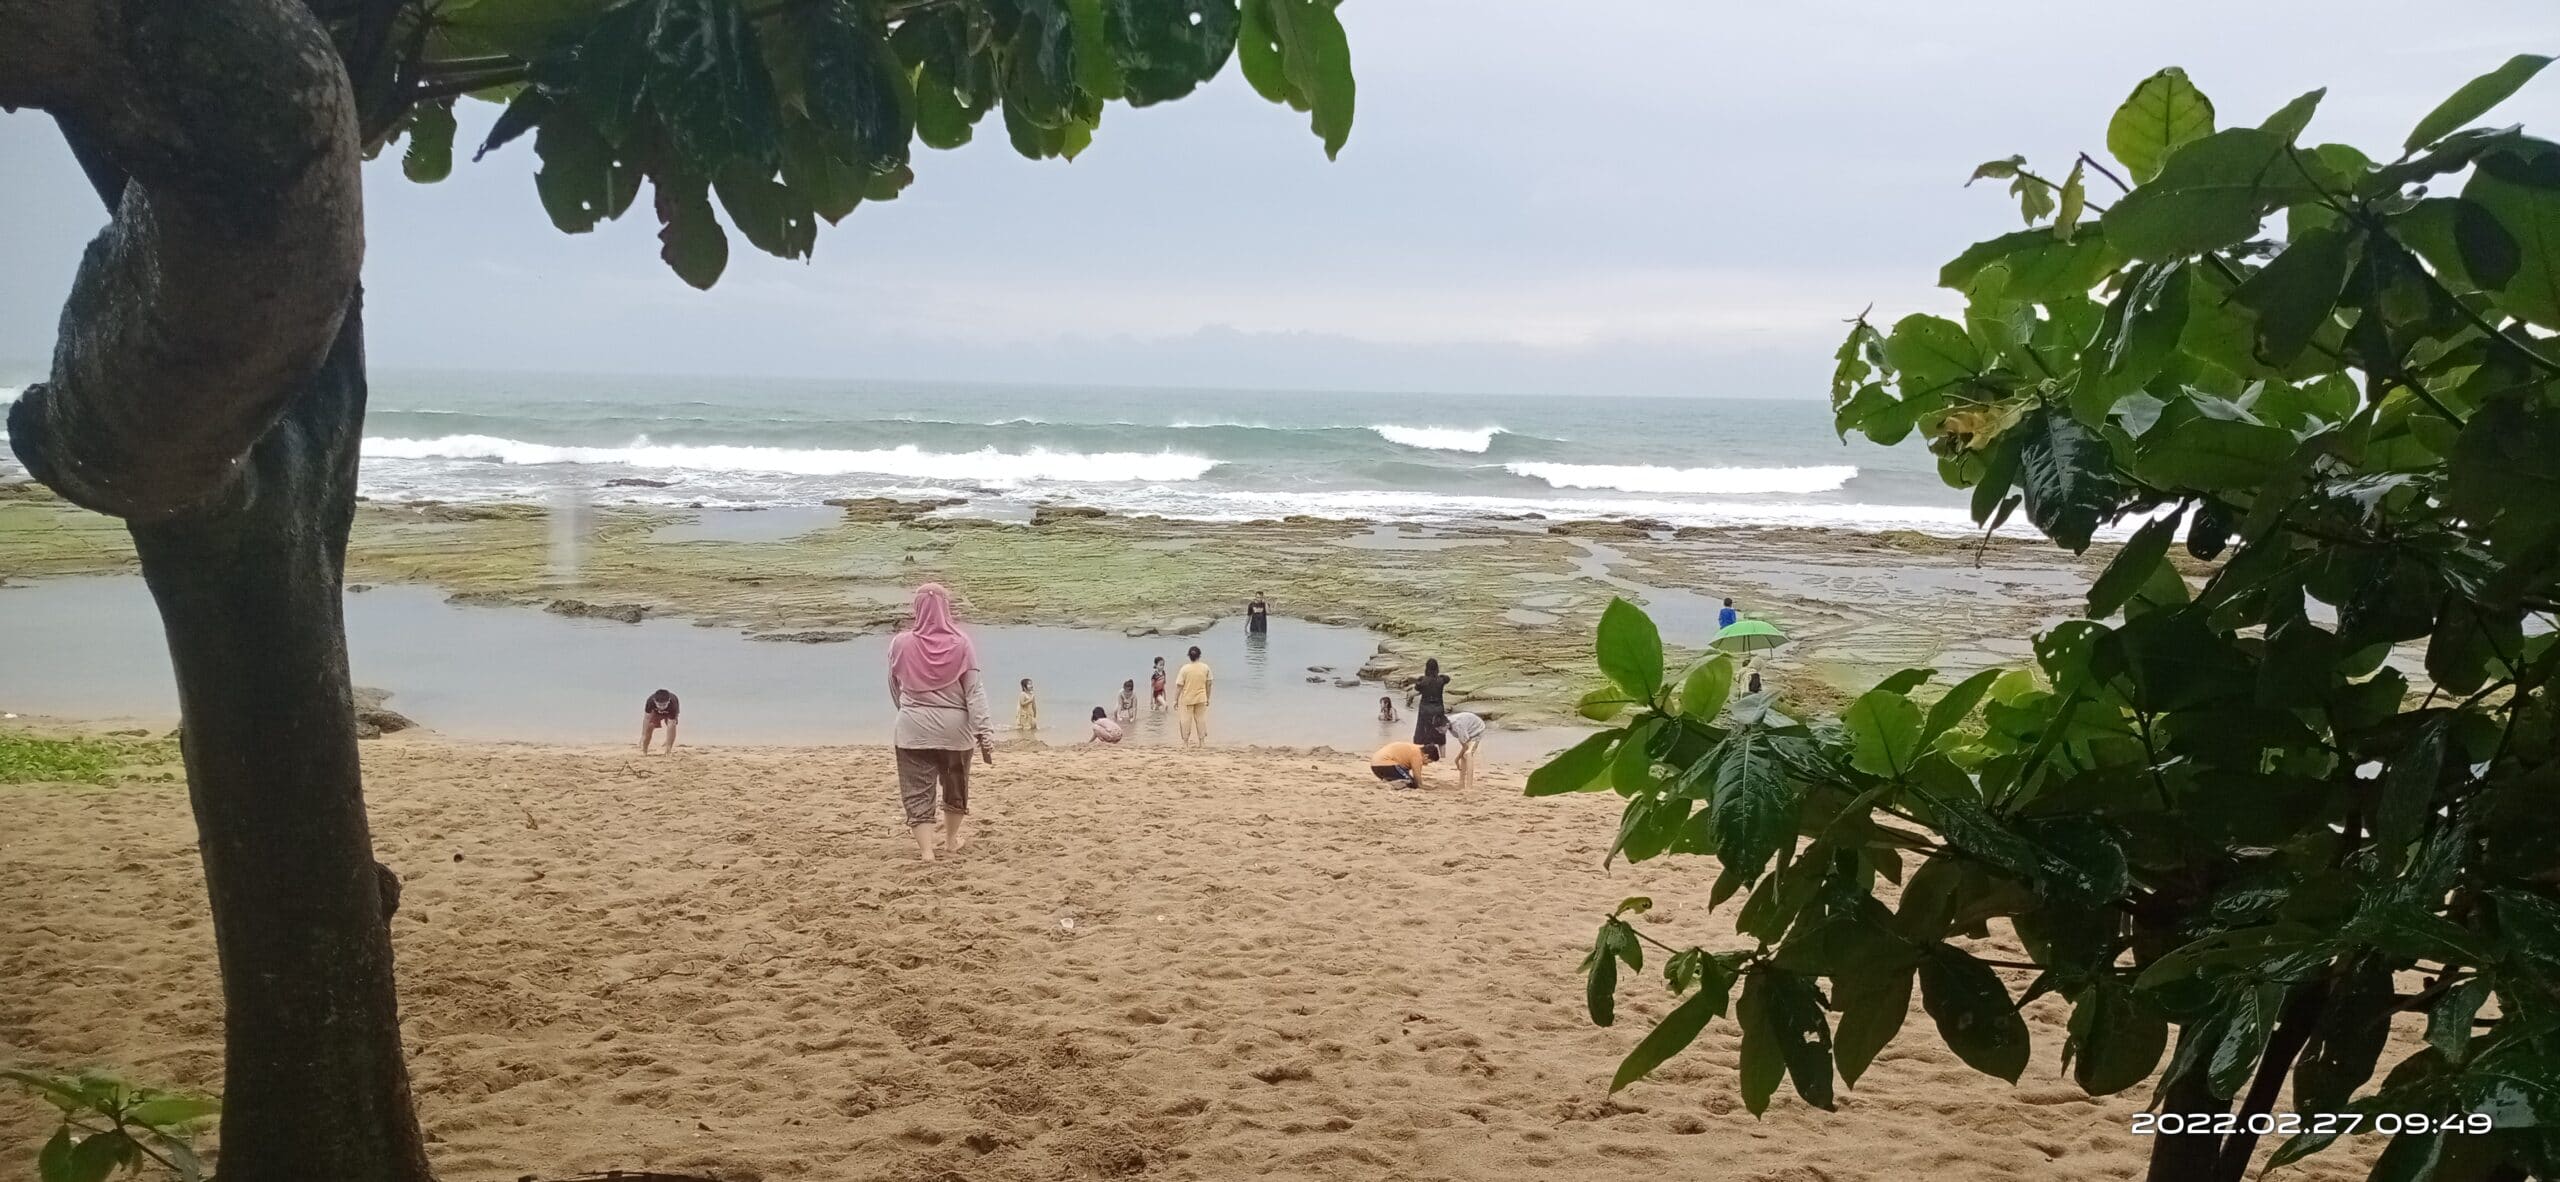 Pantai Pasput Panggarangan Lebak Banten